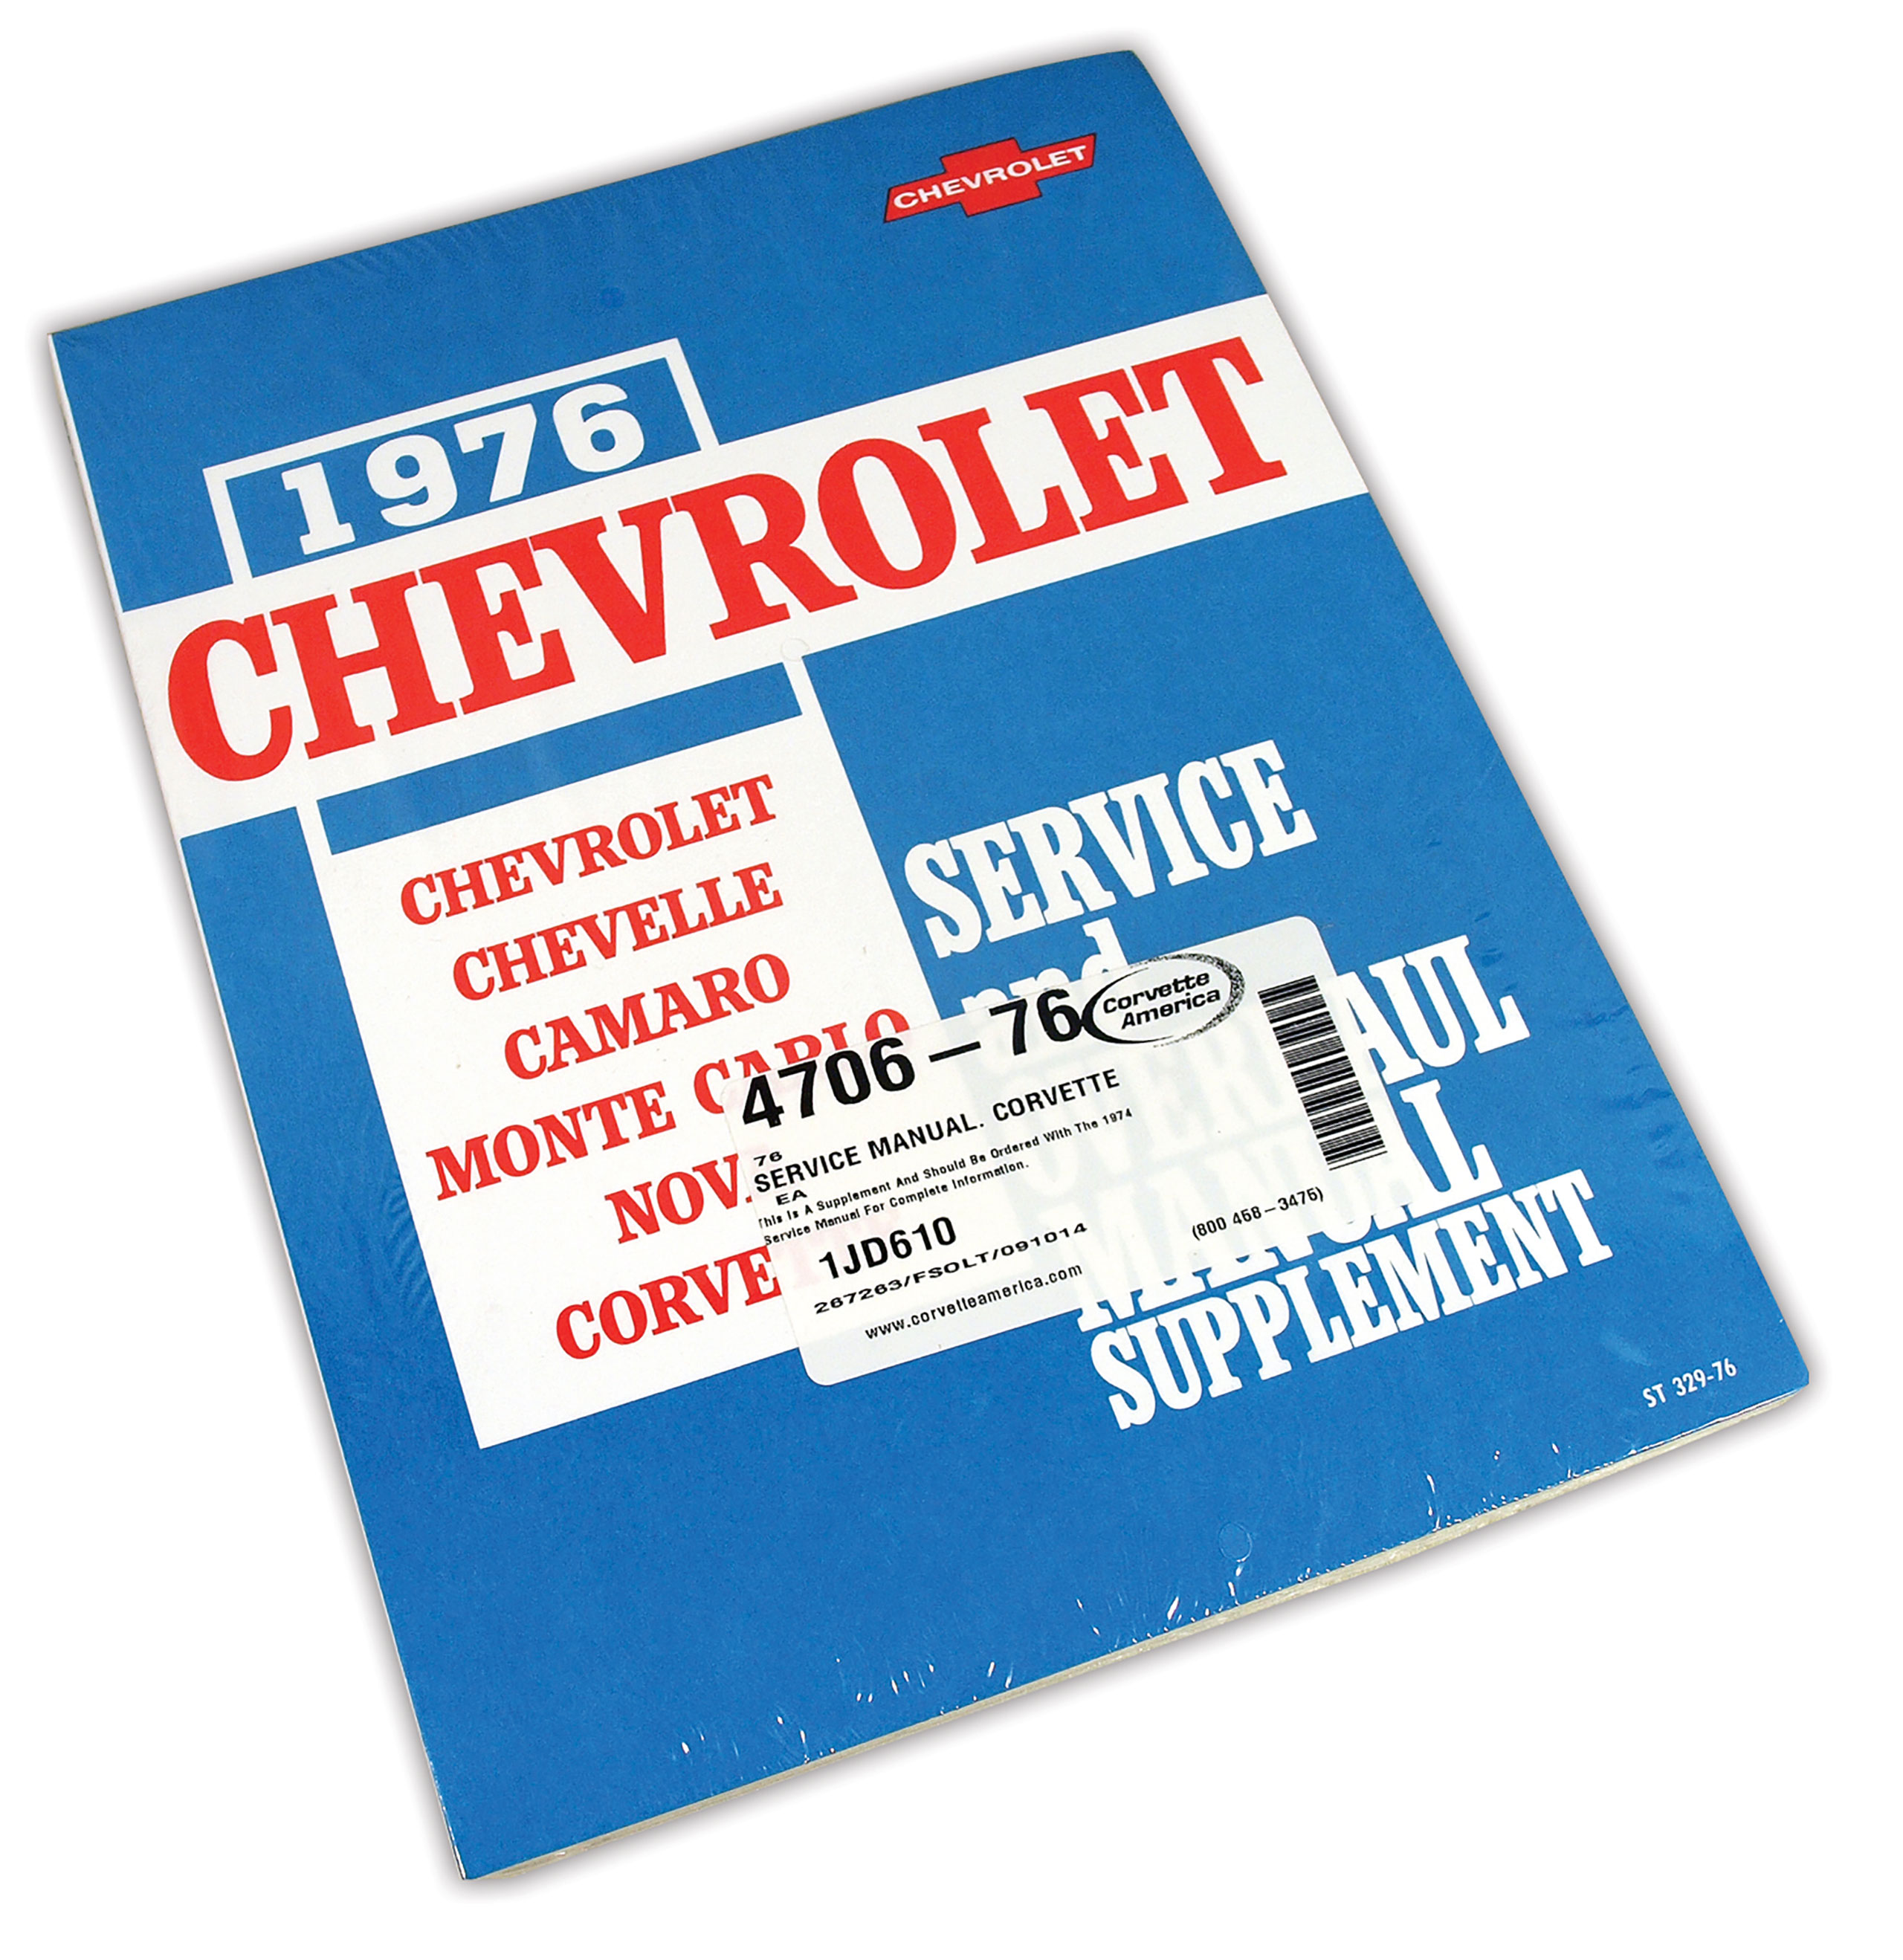 C3 1976 Chevrolet Corvette Service Manual. Corvette - Auto Accessories of America